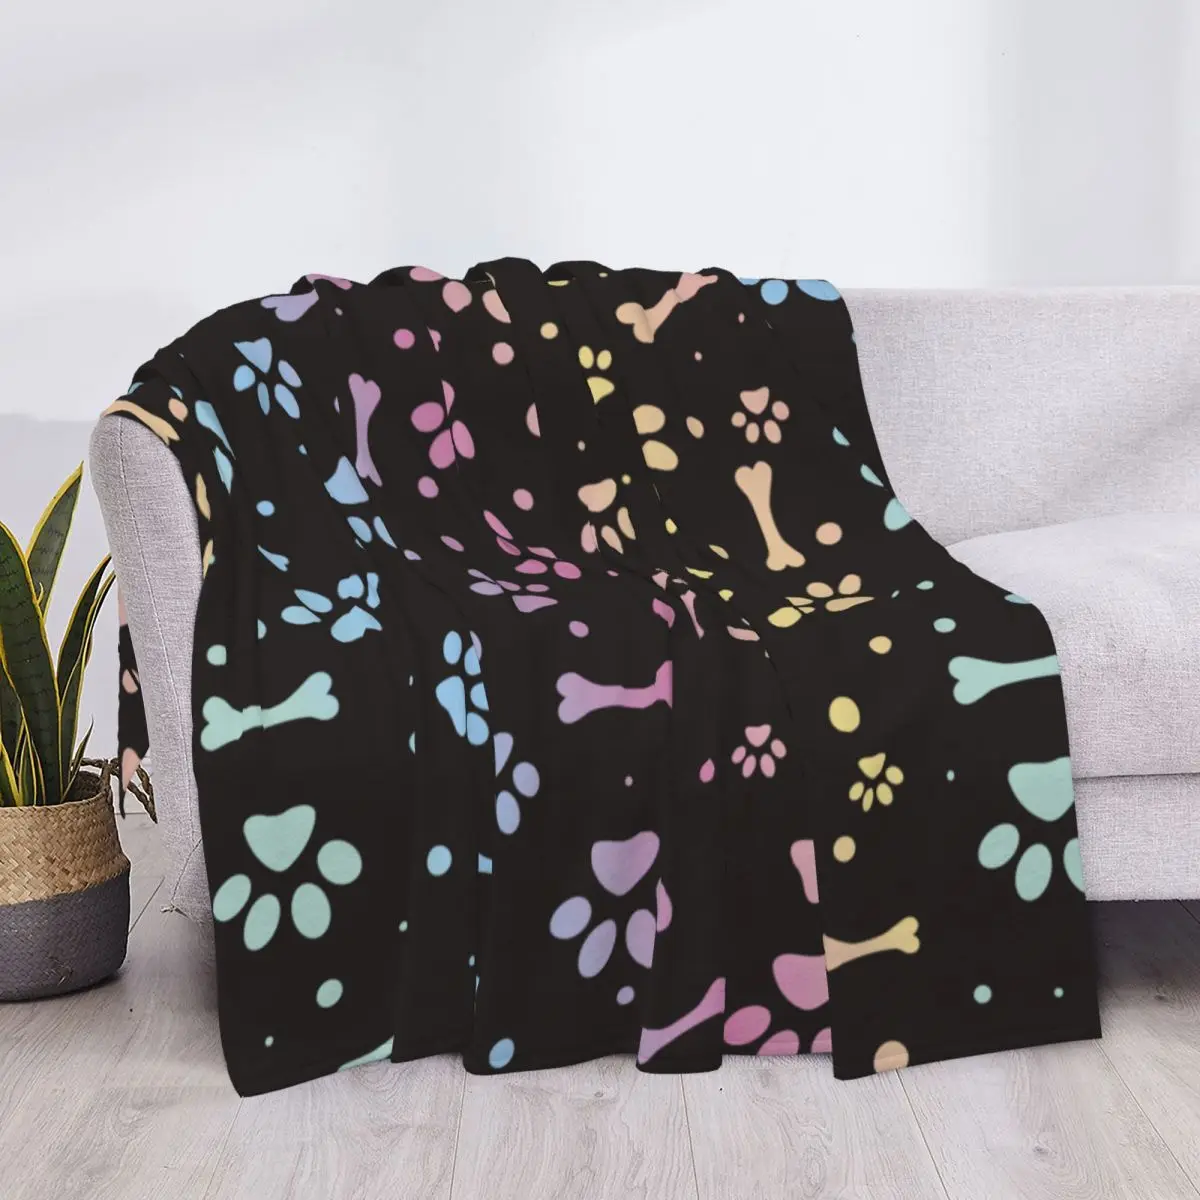 

Одеяло в виде собачьих лап и костей, зимнее флисовое многофункциональное супер мягкое одеяло для кровати, офиса, плюшевое тонкое одеяло